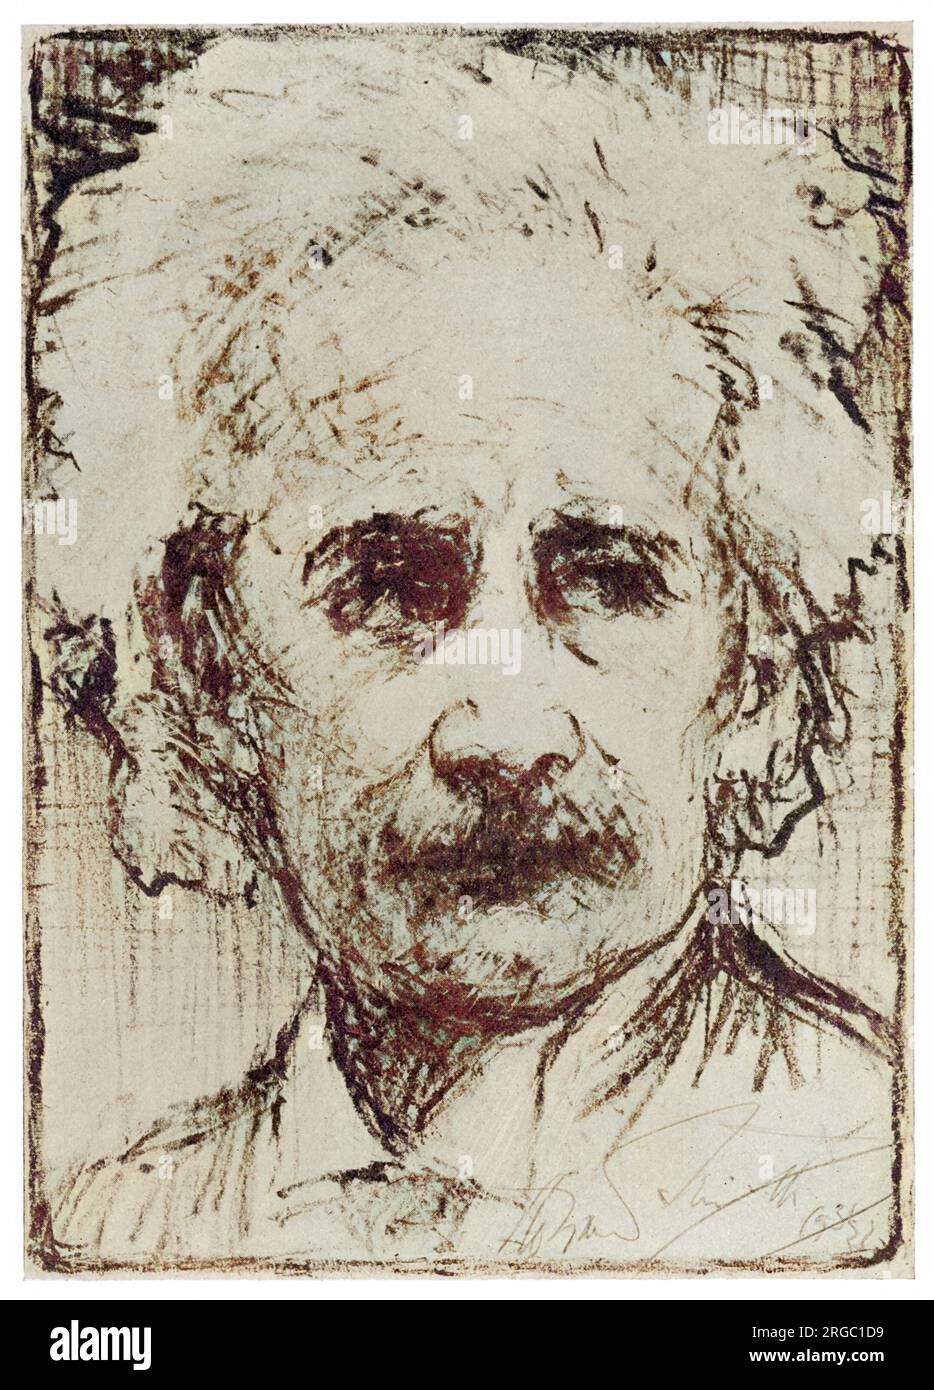 ALBERT EINSTEIN (1879-1955), Wissenschaftler. Stockfoto